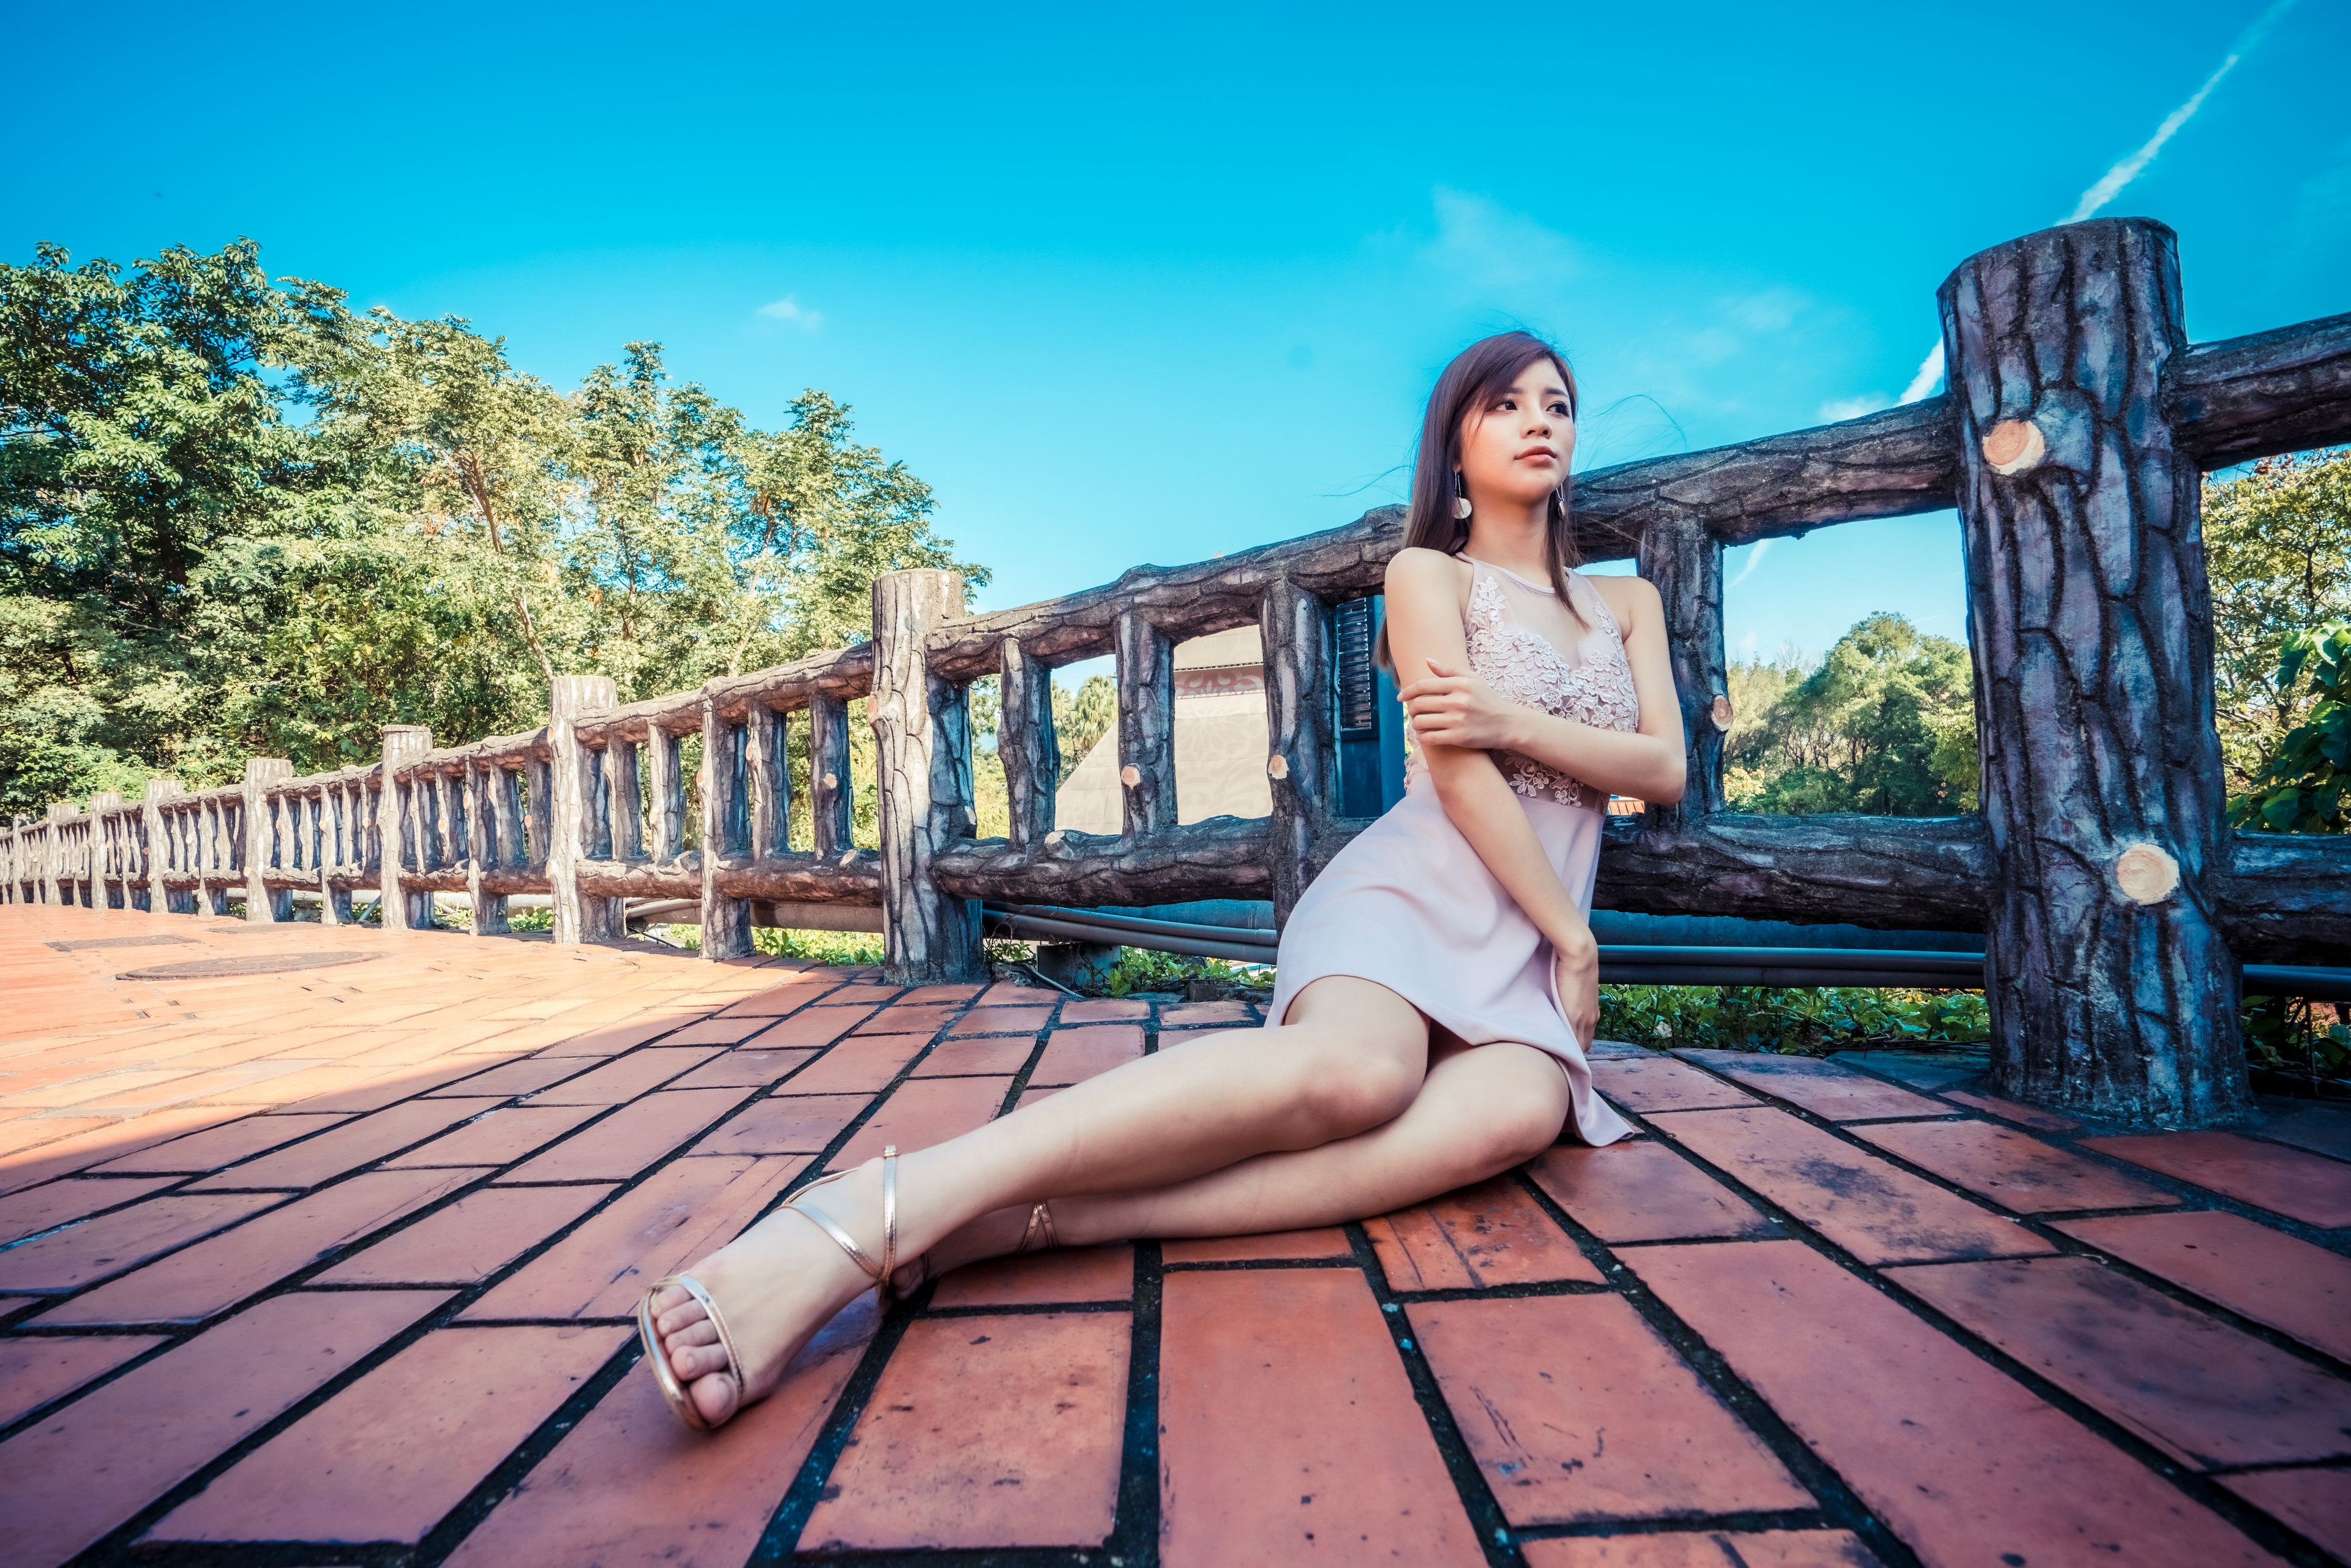 Asian Model Women Long Hair Dark Hair Sitting Railings Tiled Floor Earring Barefoot Sandal Trees Cle 3840x2561